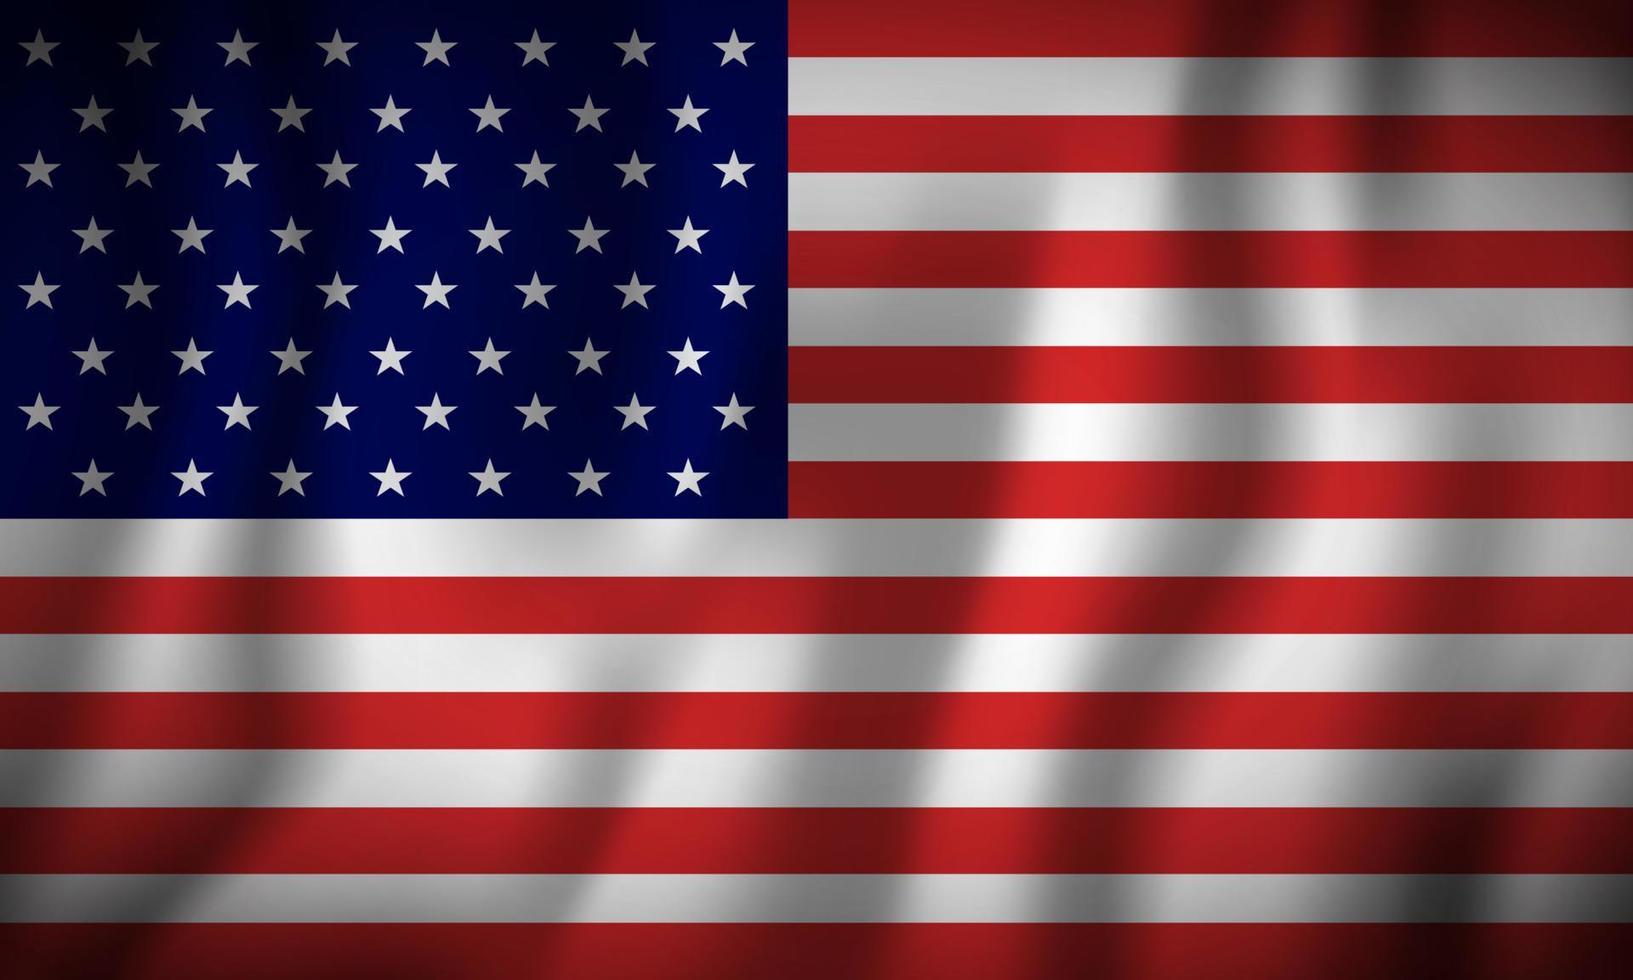 simbolo dello stato di bandiera degli Stati Uniti isolato su sfondo bandiera nazionale. biglietto di auguri festa dell'indipendenza nazionale degli stati uniti. banner di illustrazione con bandiera di stato realistica d'america. vettore